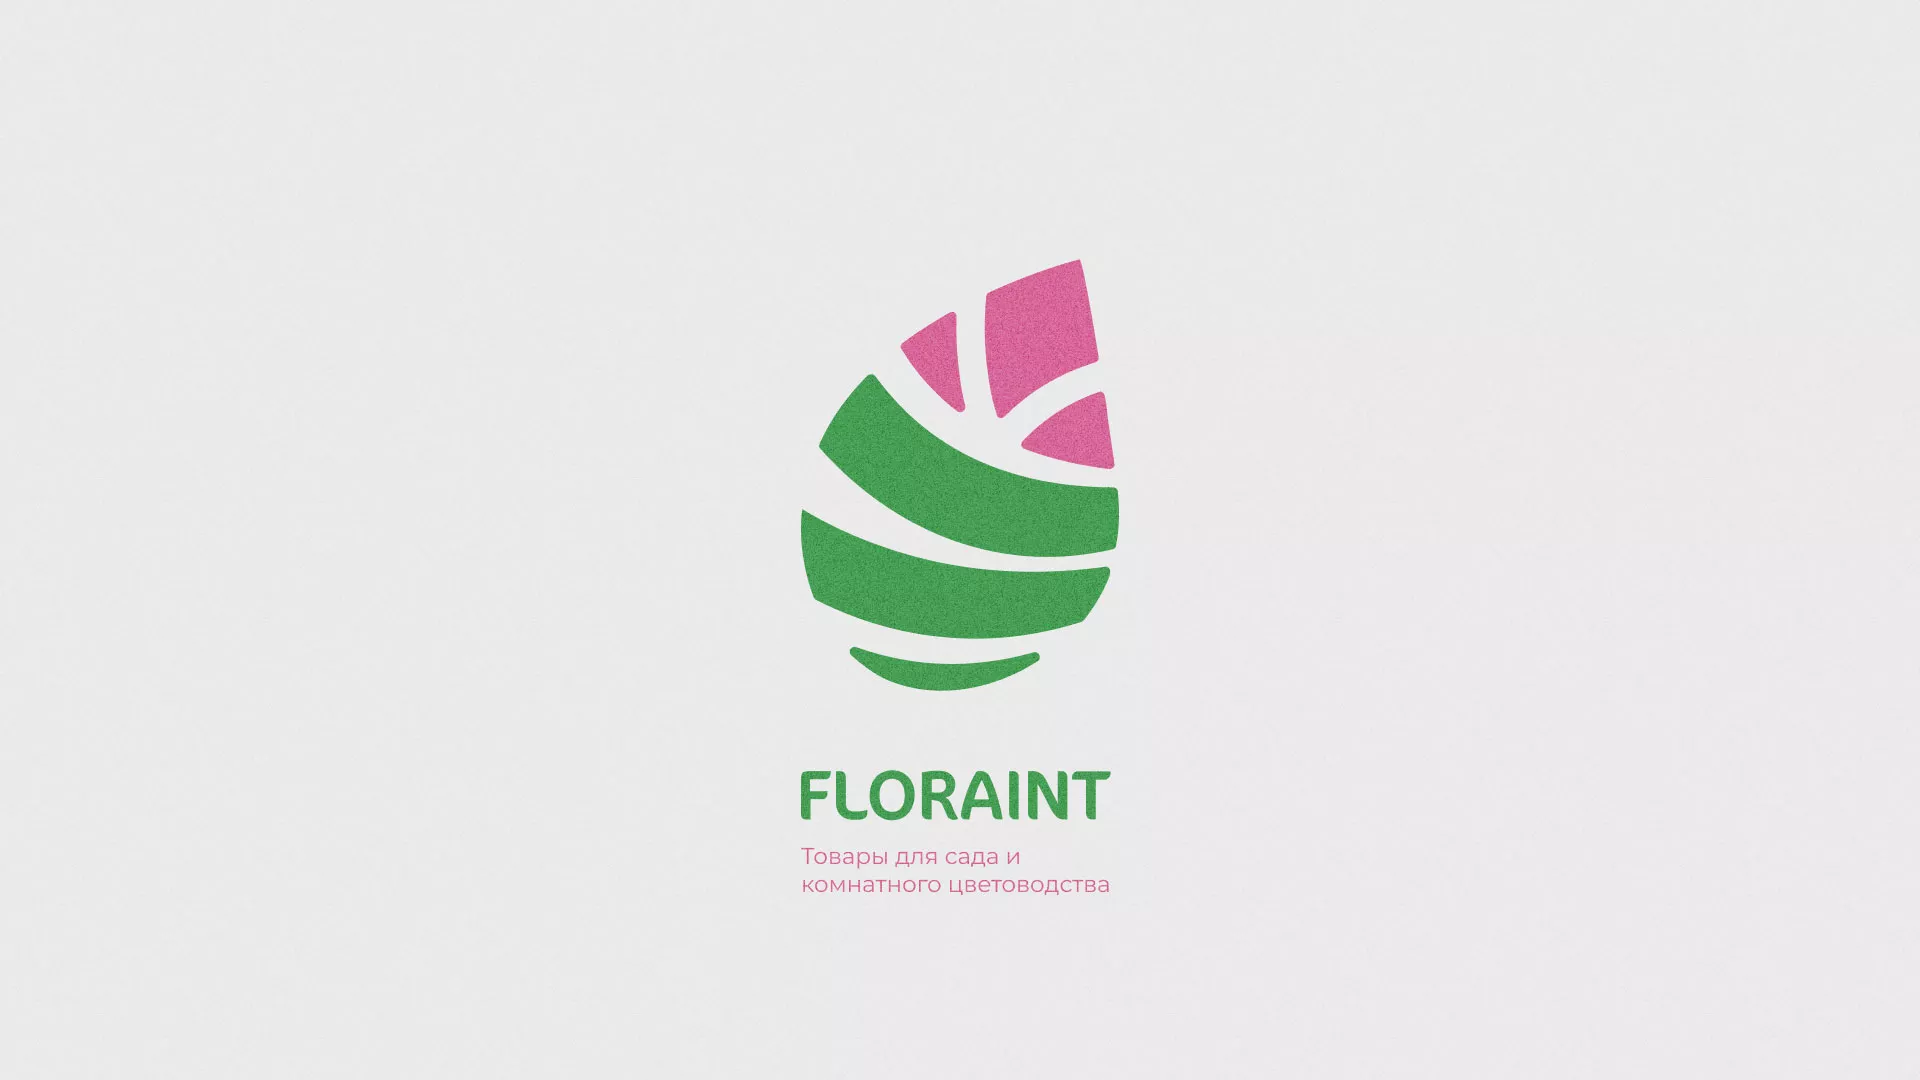 Разработка оформления профиля Instagram для магазина «Floraint» в Архангельске